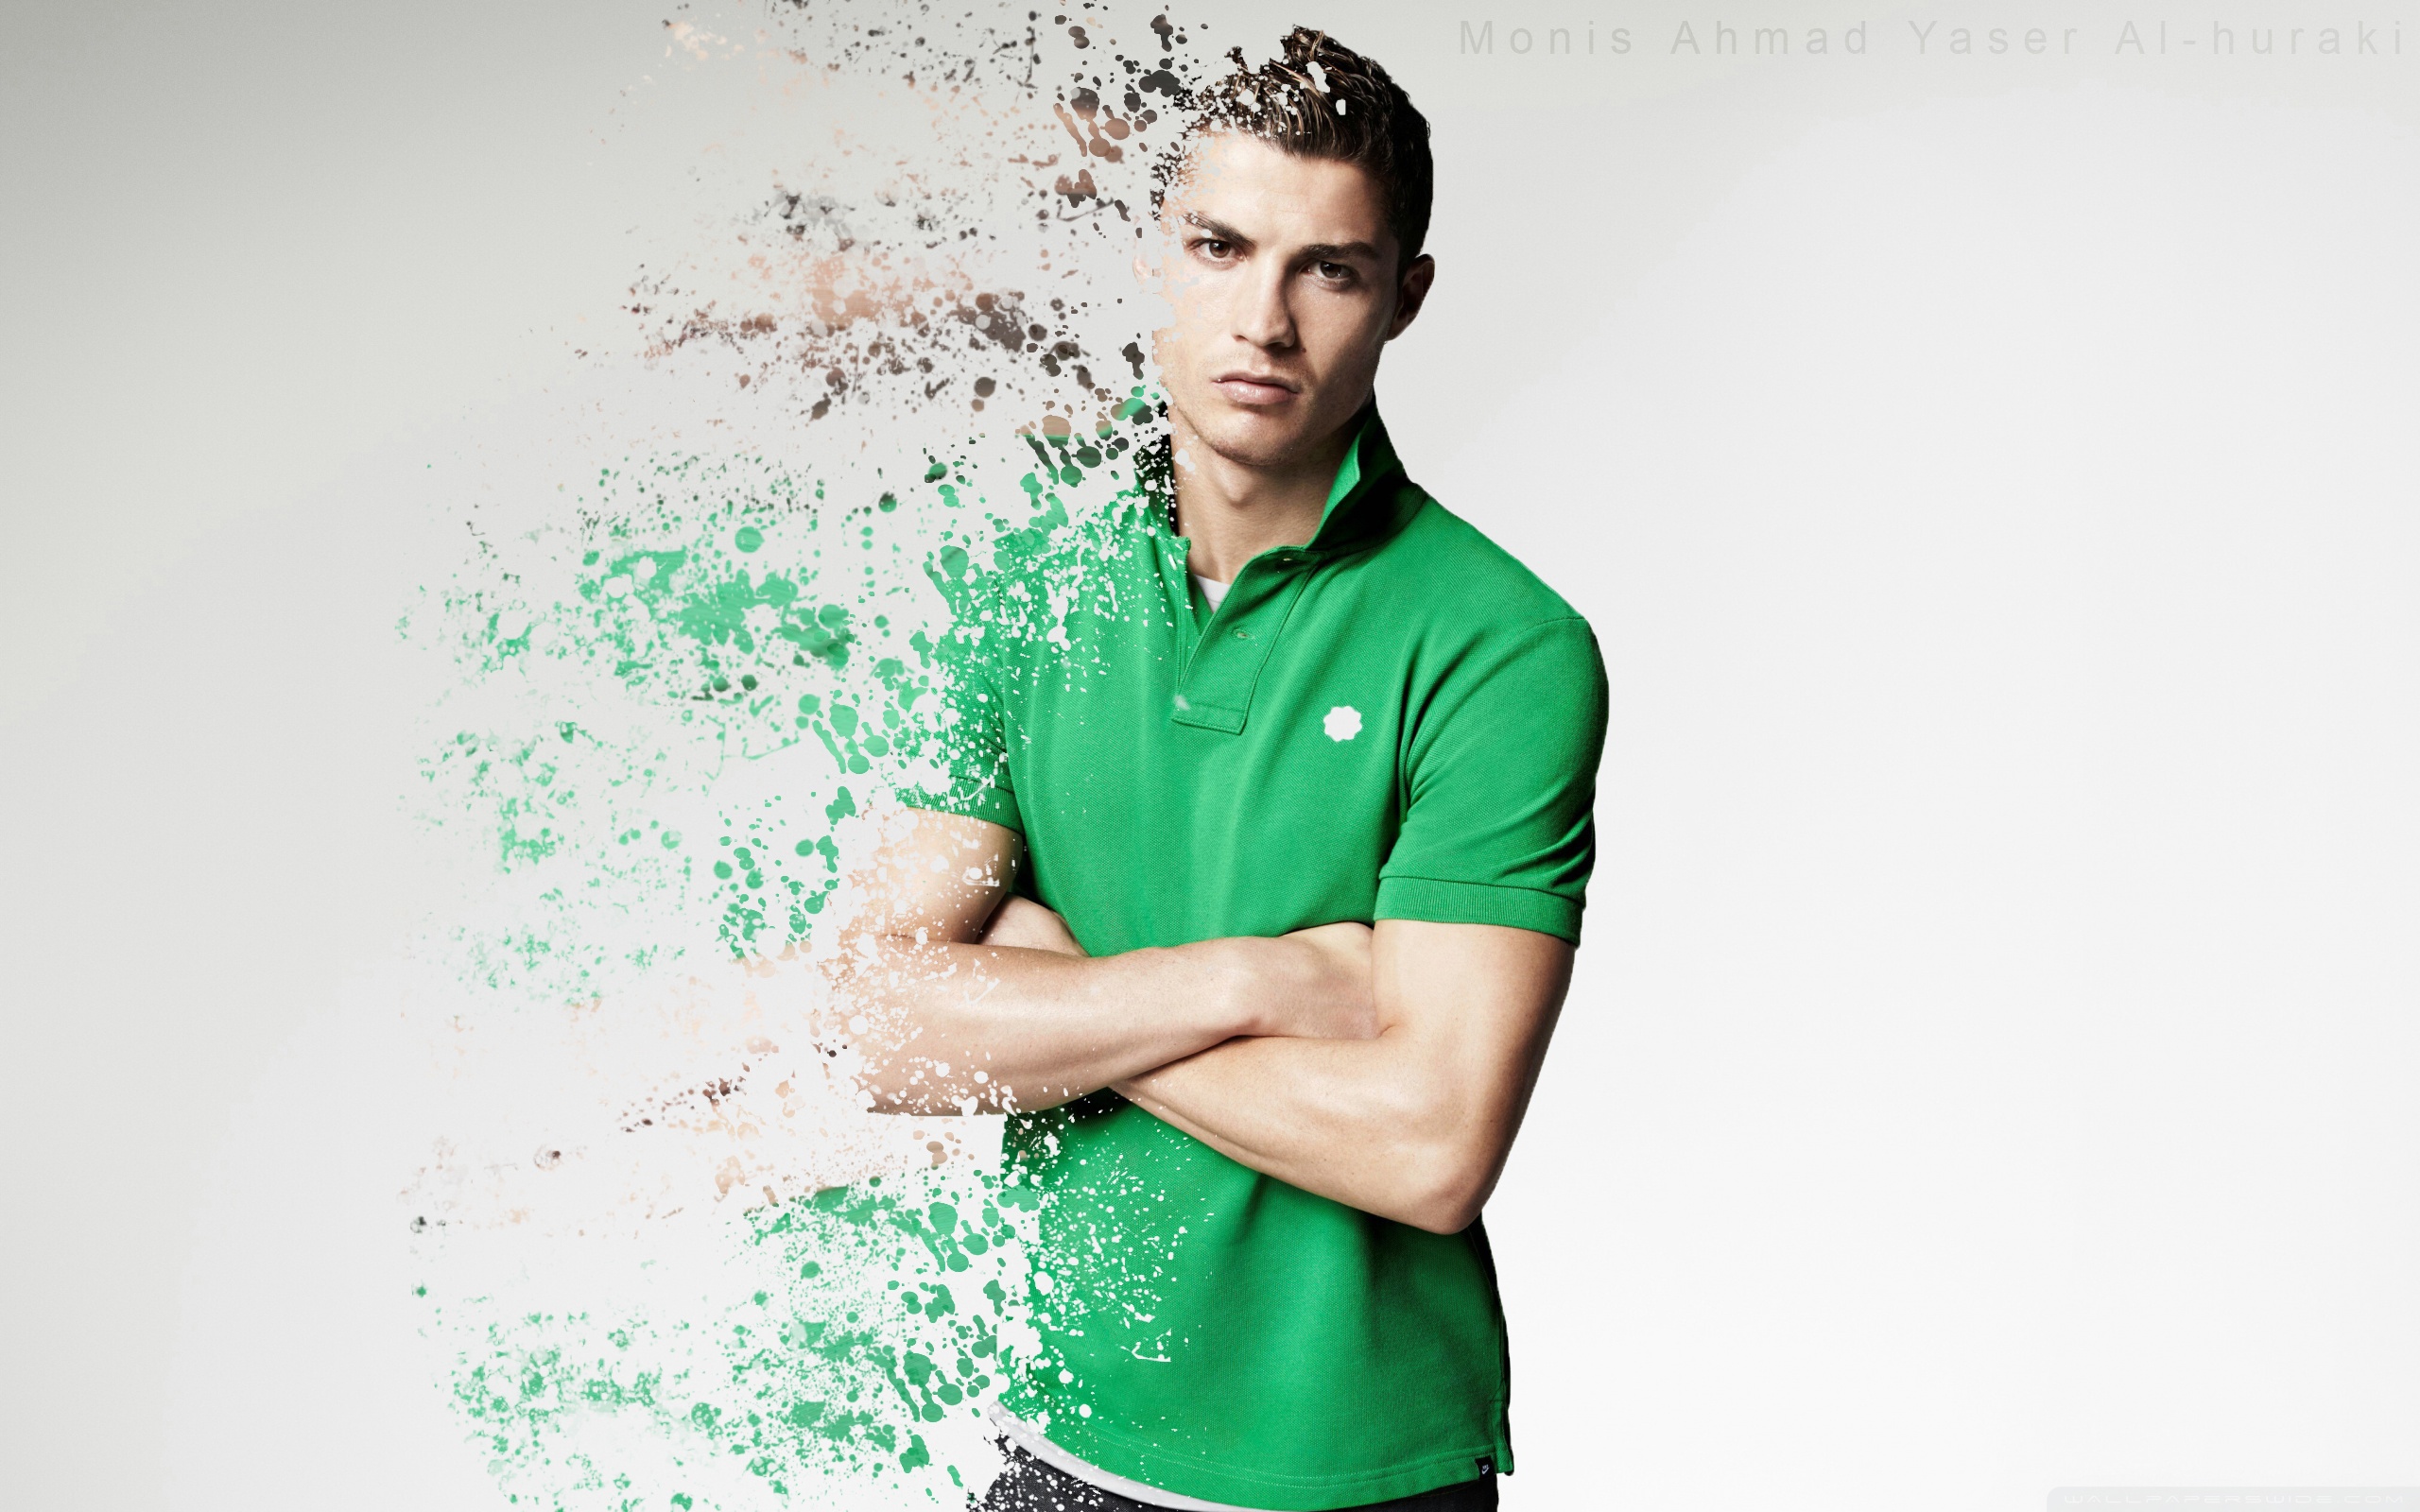 Cristiano-Ronaldo-2014-wallpaper